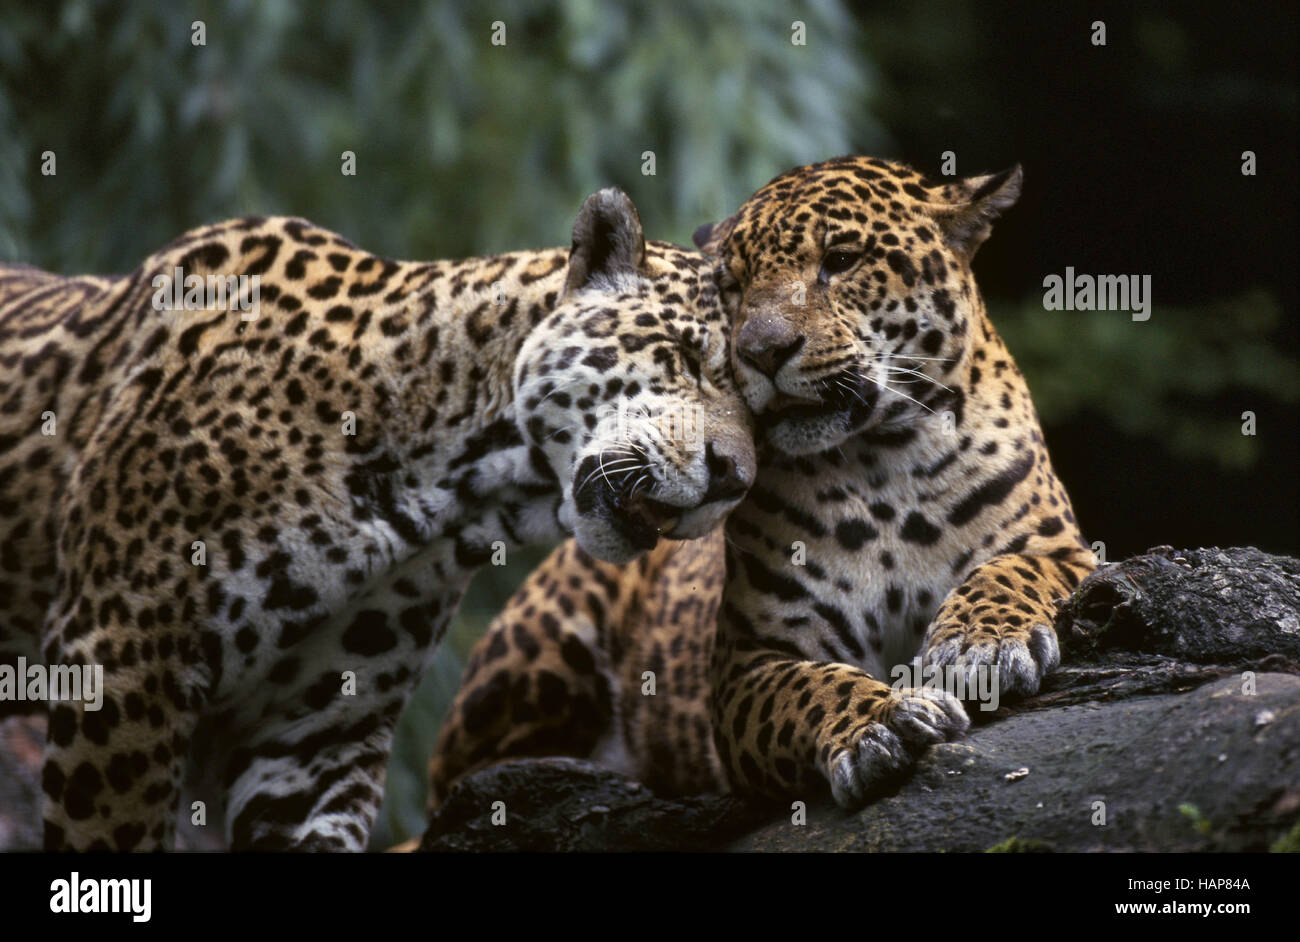 Jaguar, Panthera onca, Paar, pair, couple, Stock Photo